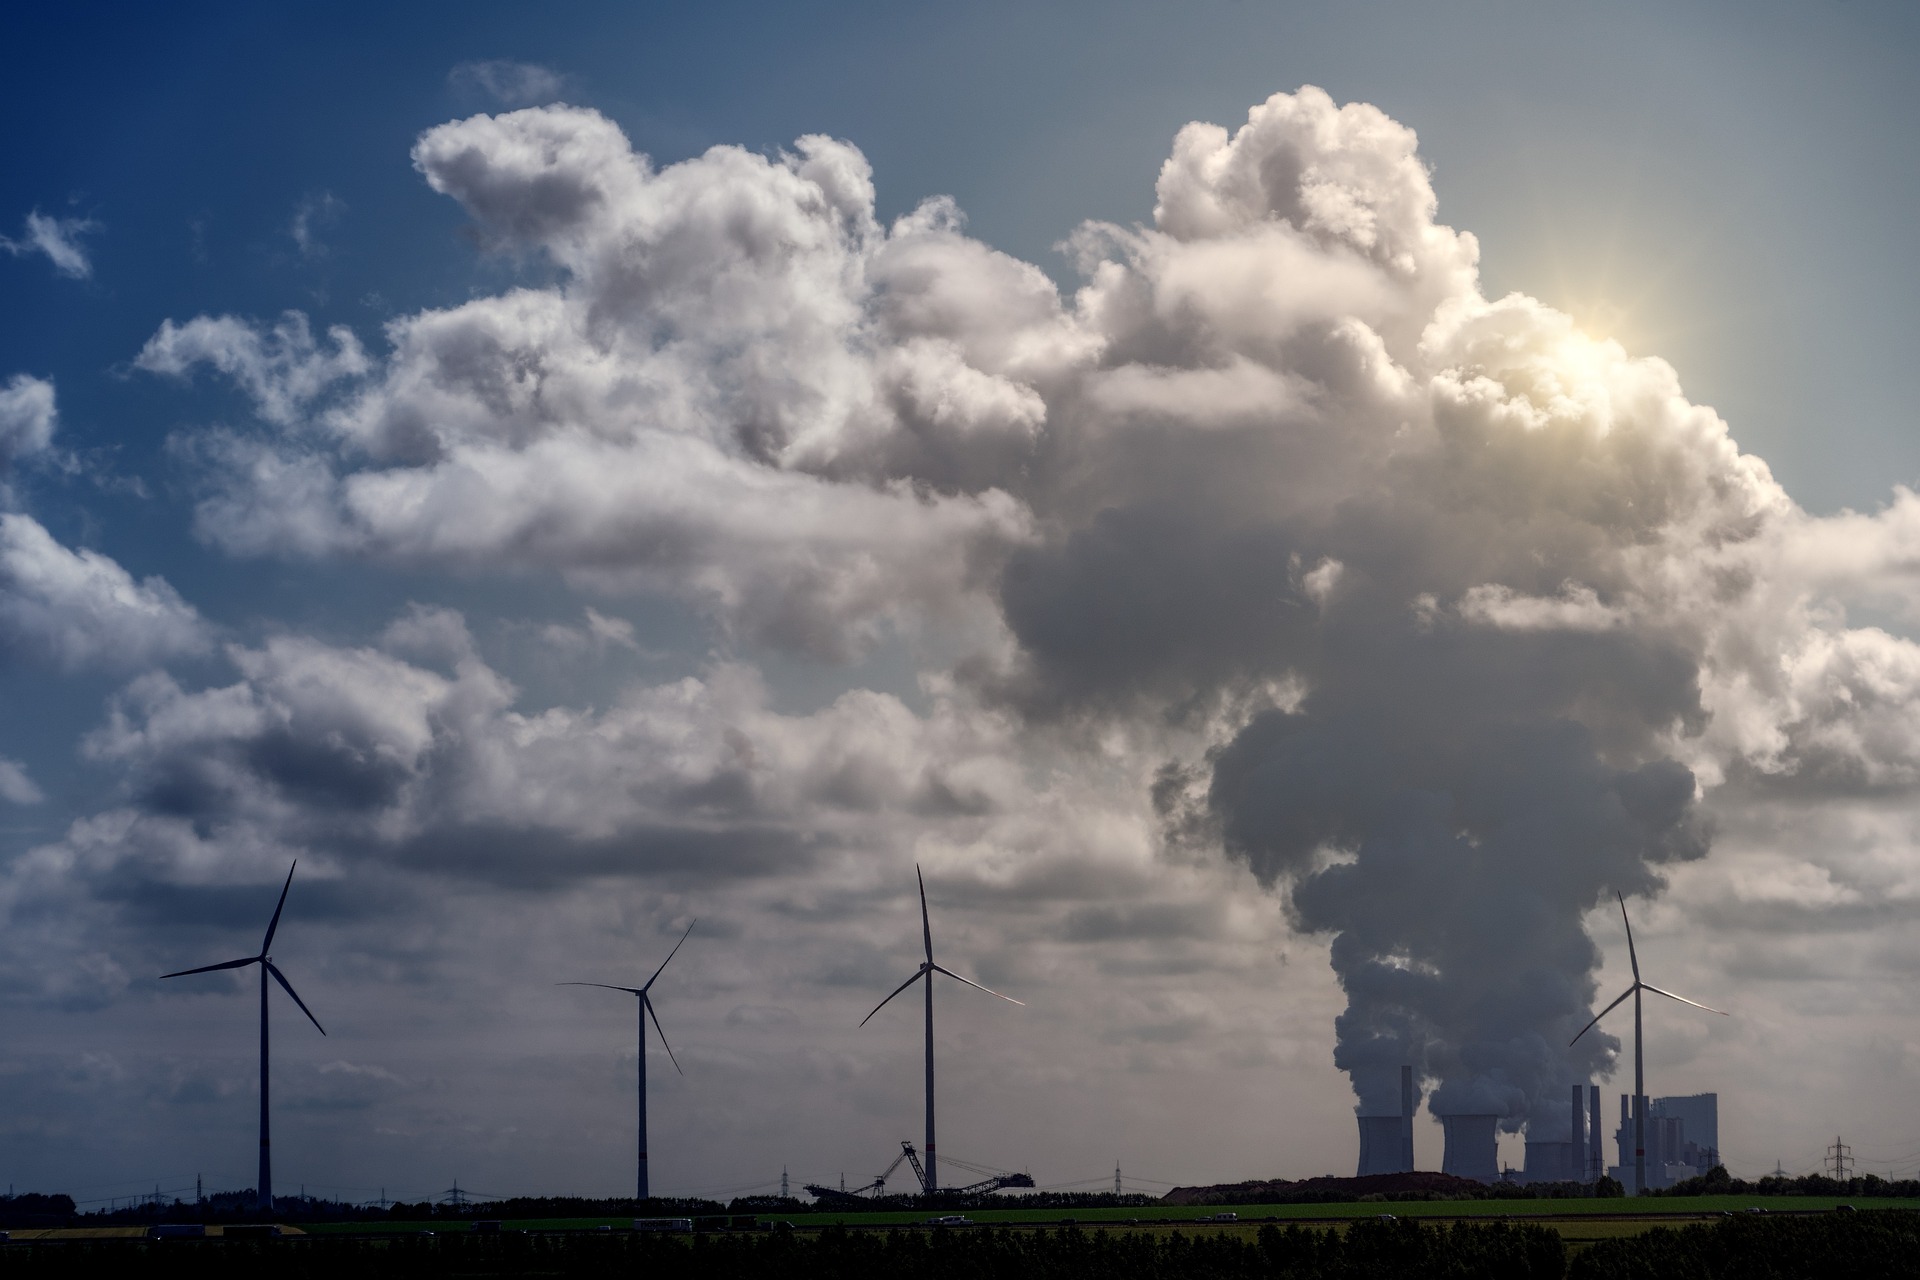 Principais mercados regulados de carbono devem alcançar US$ 800 bilhões em 2023. Na imagem: Planta termelétrica emitindo grande volume de emissões, próximo a aerogeradores, ao fundo (Foto: Joe/jplenio/Pixabay)